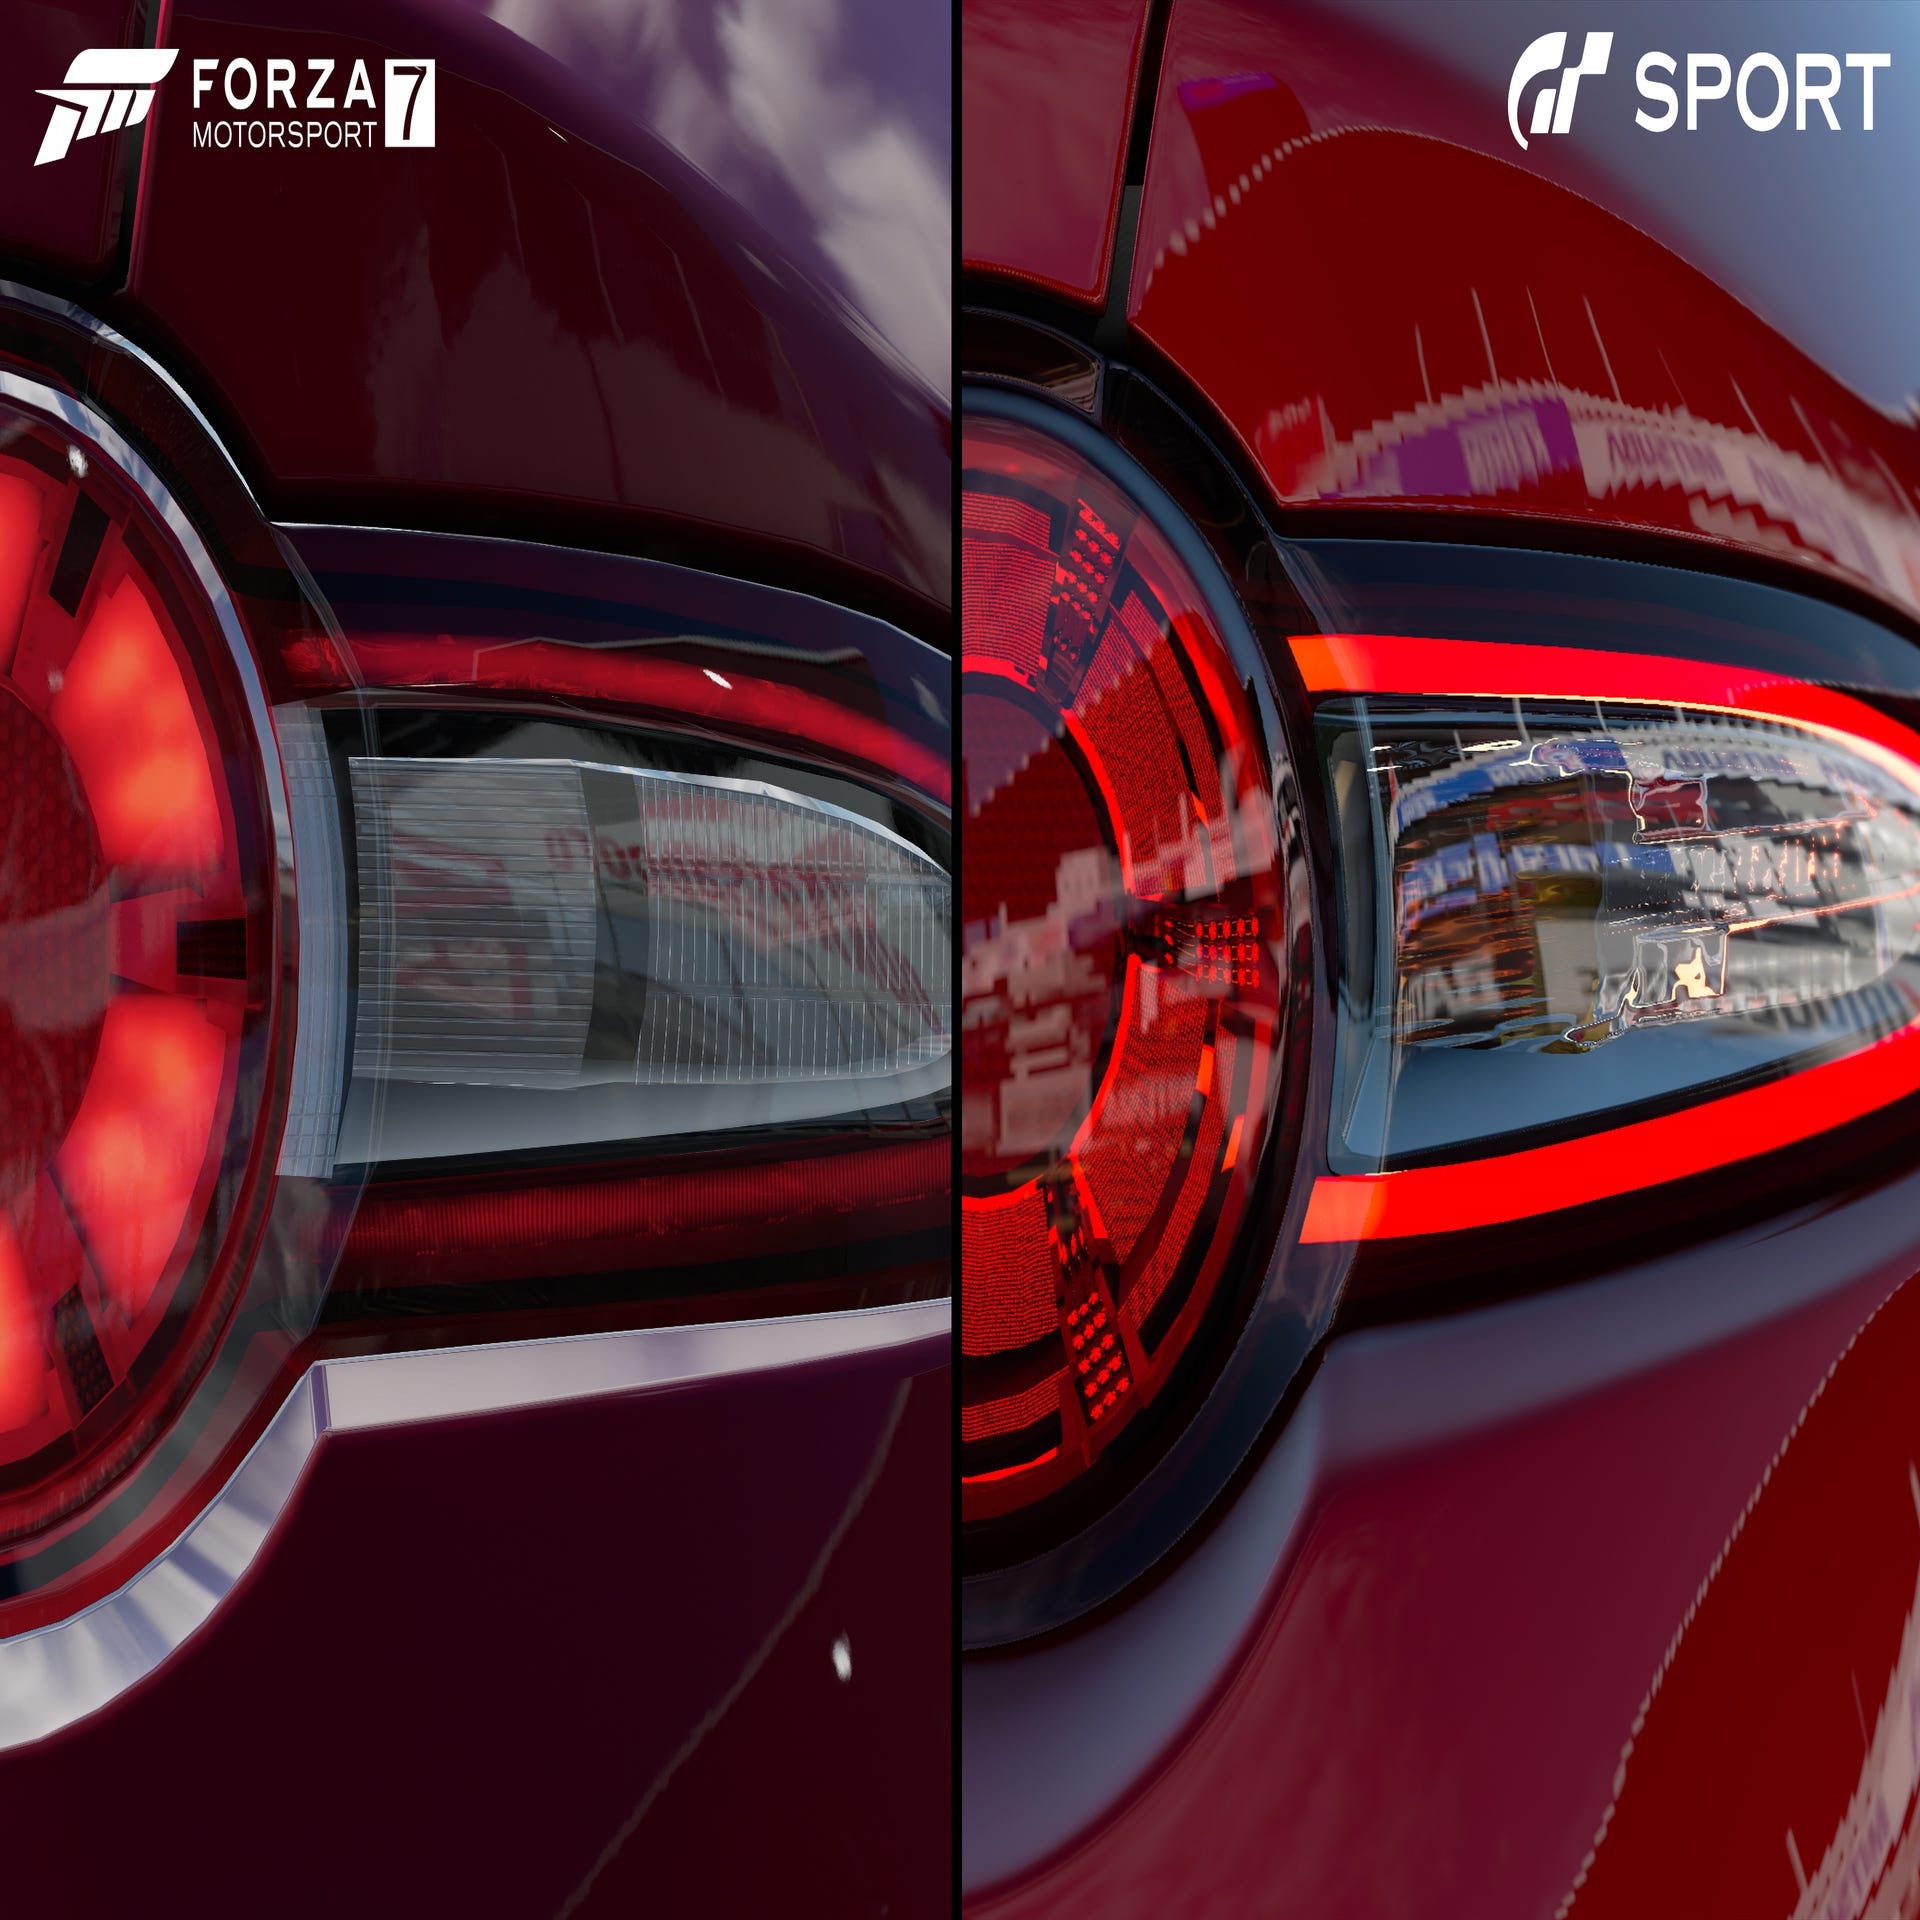 Gran Turismo 6 (PS3) vs Forza Horizon 3 (Xbox Series S) Comparison /  Comparação Gameplay 